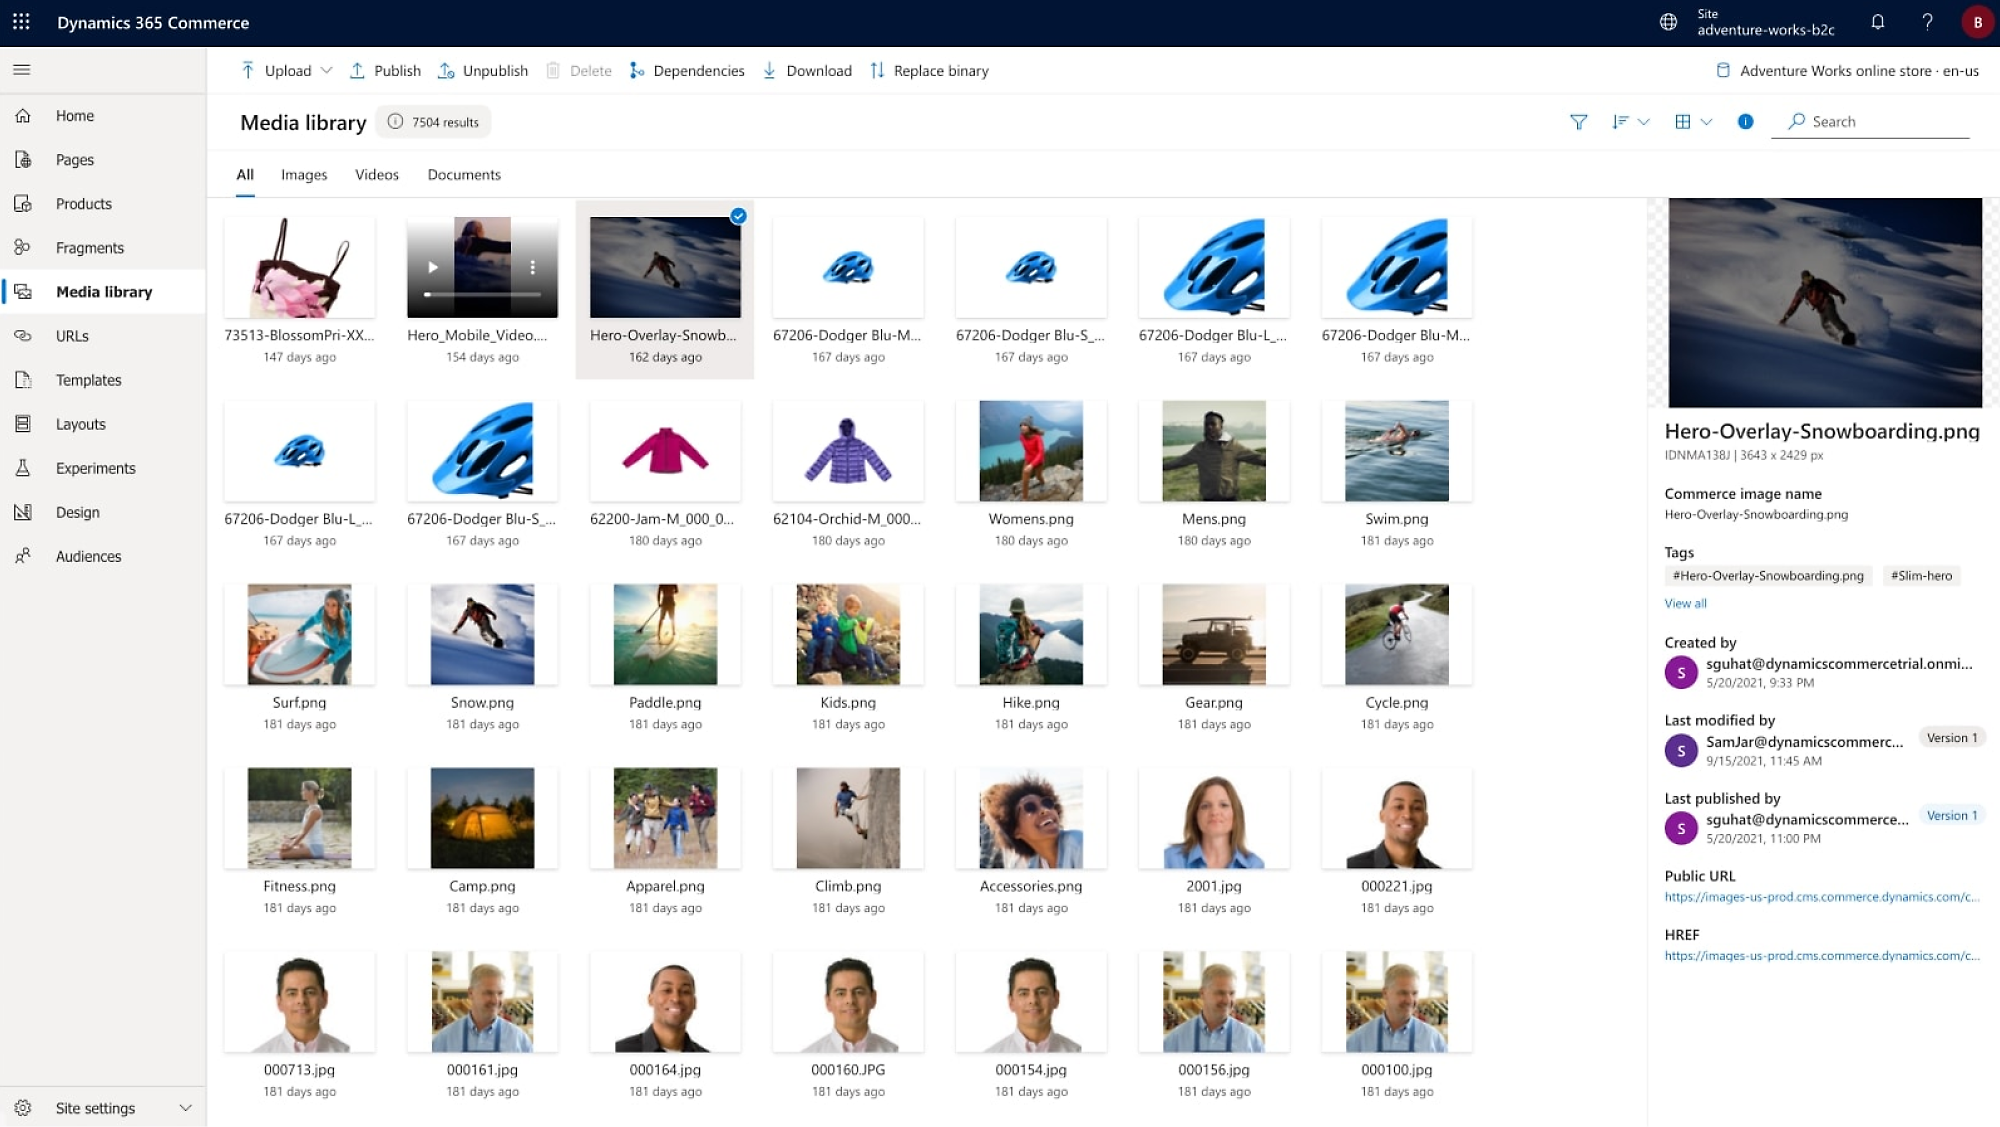 Снимок экрана: интерфейс Dynamics 365 Commerce с различными возможностями и мультимедиа-файлами.